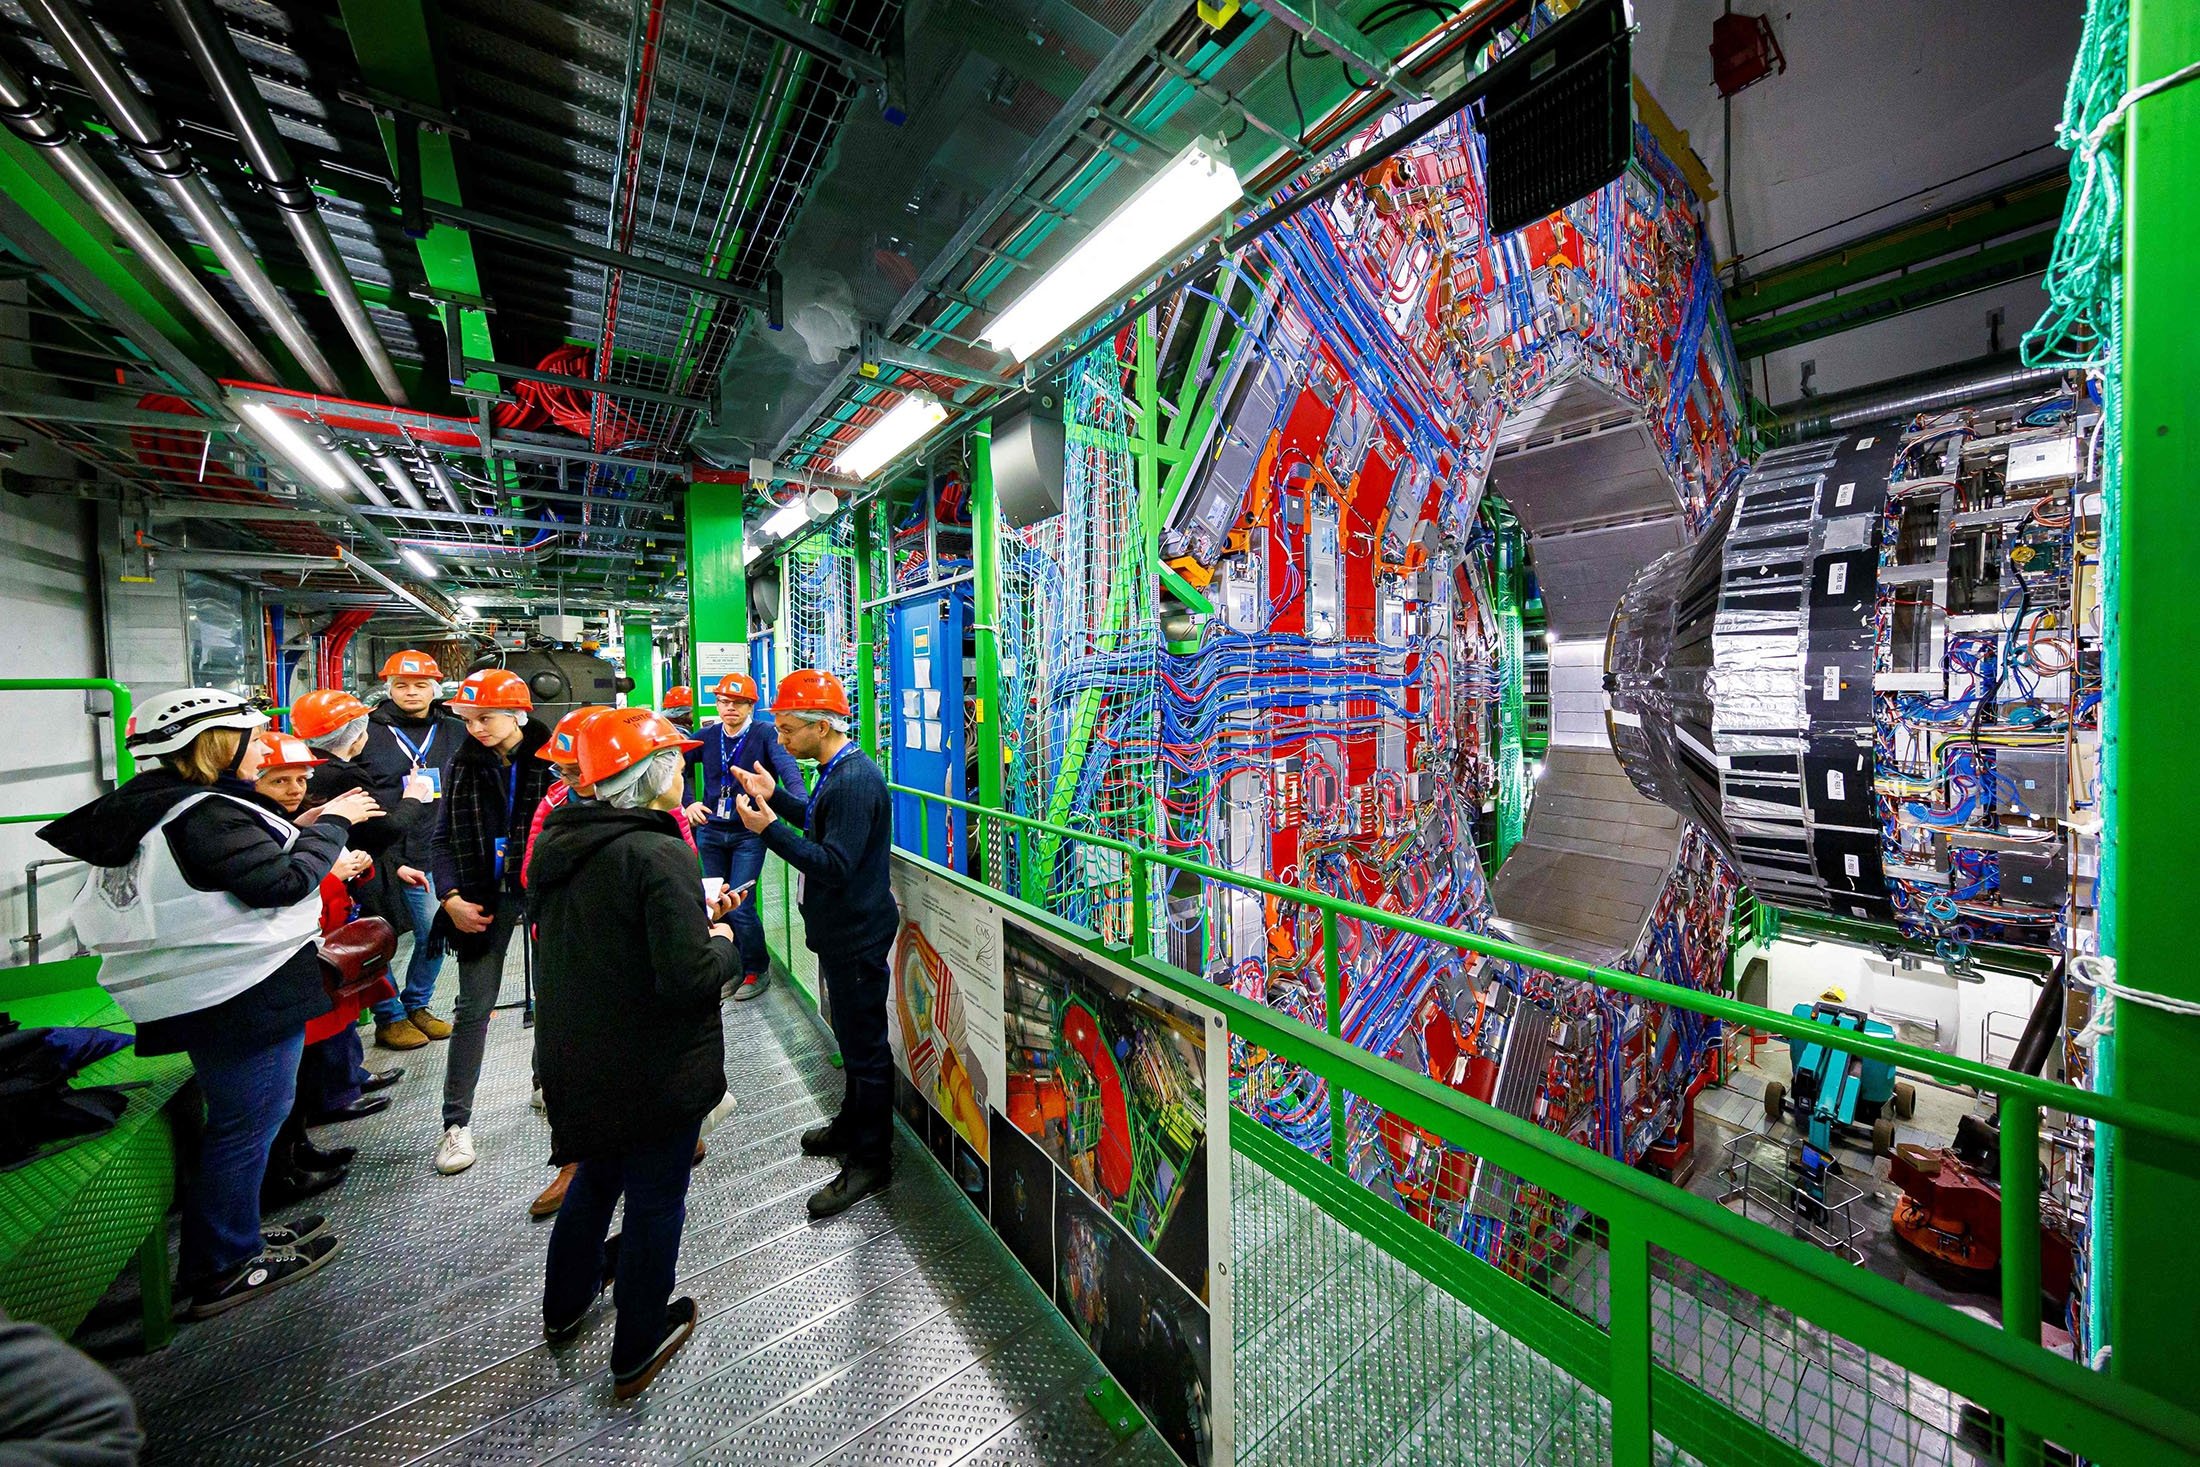 Anggota media menerima penjelasan di sebelah perakitan detektor Compact Muon Solenoid di terowongan Large Hadron Collider di CERN, selama pekerjaan pemeliharaan di Cessy, Prancis, dekat Jenewa, 6 Februari 2020. (AFP Photo)